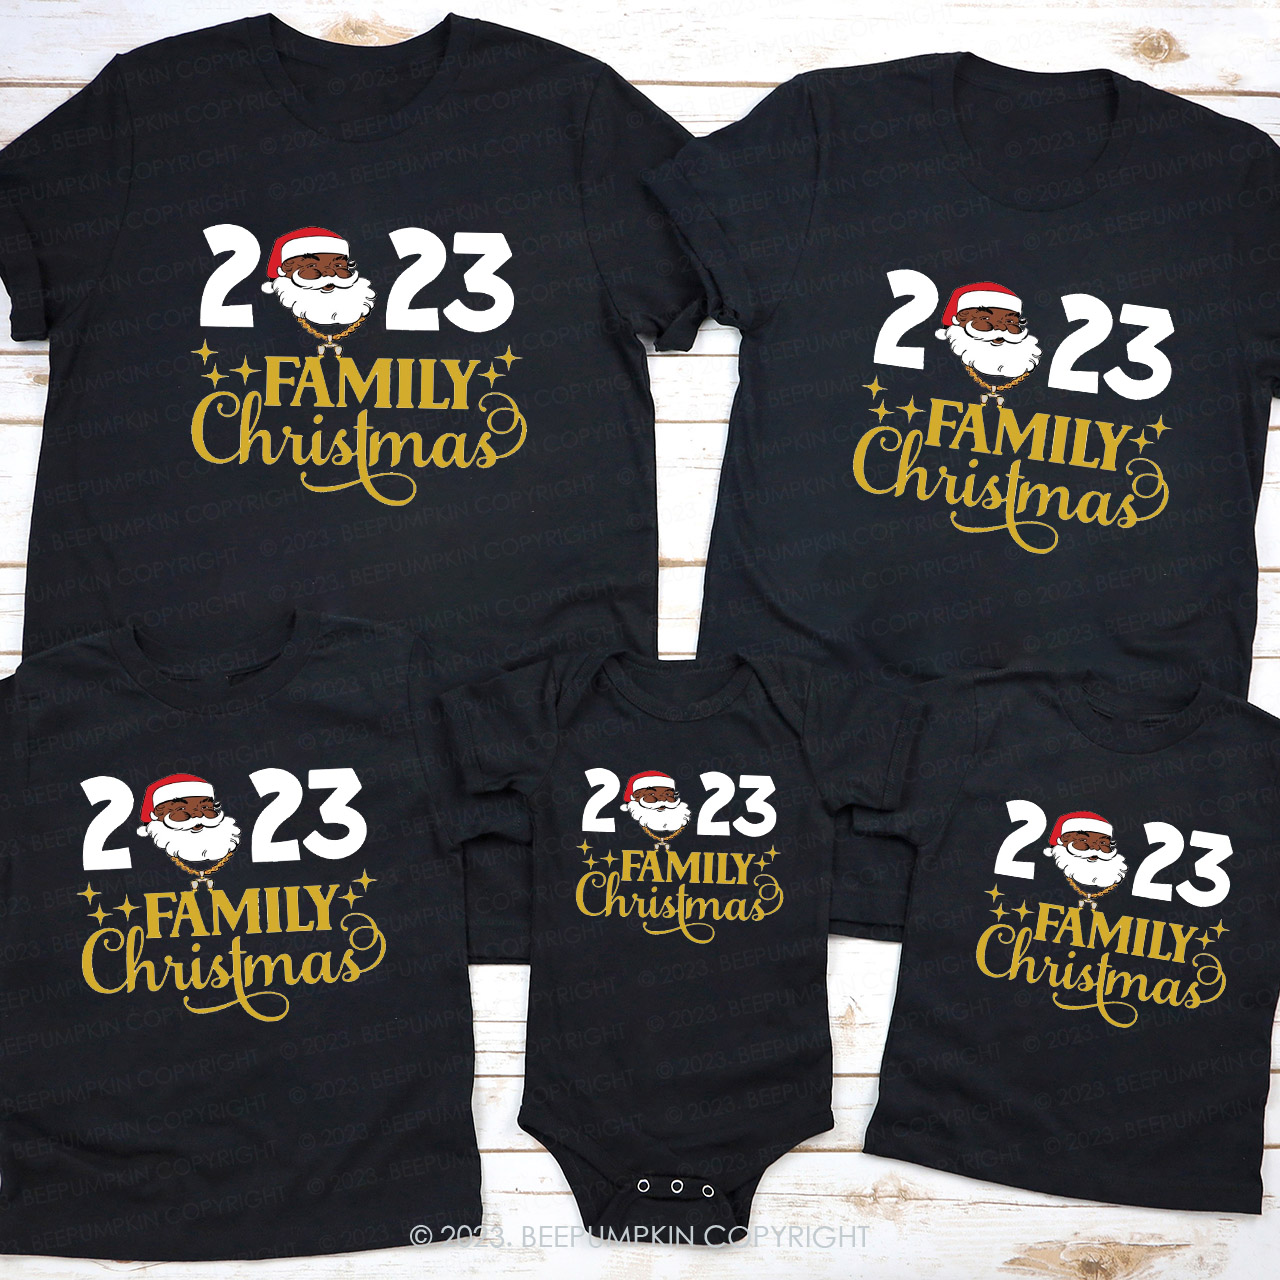 Santa Family Christmas 2023 Party Shirts Beepumpkin